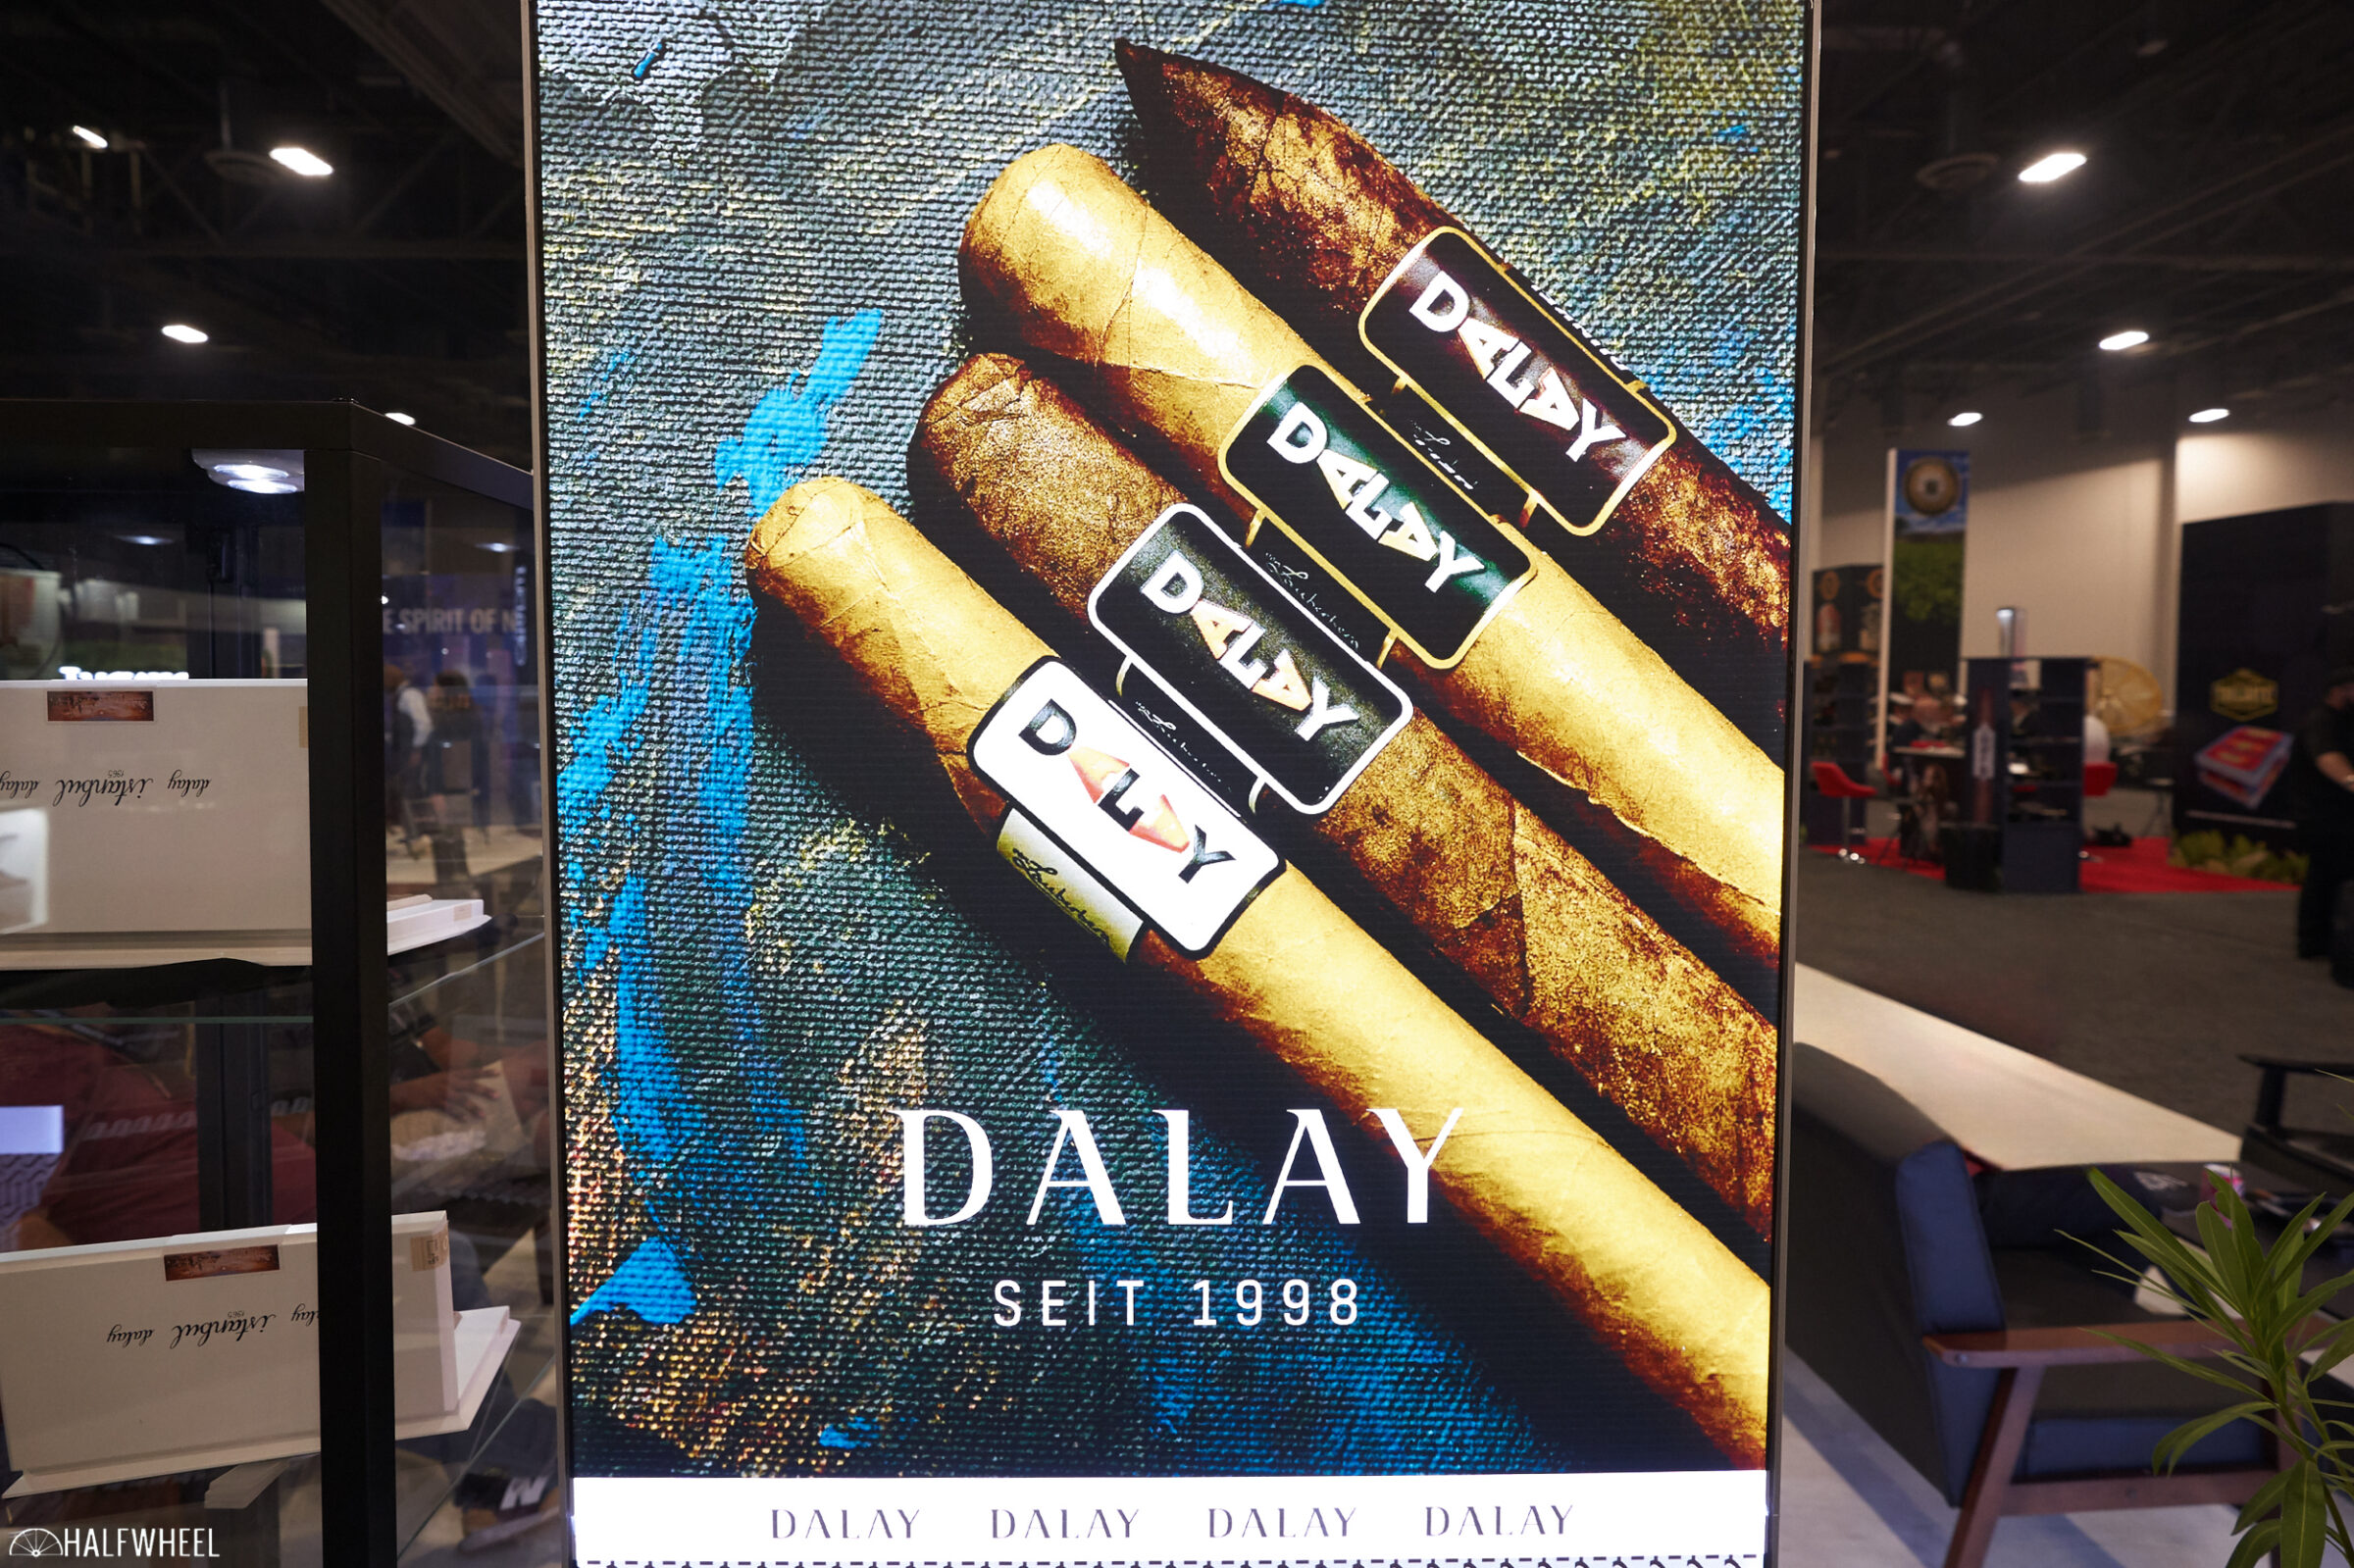 Buy Dalay Zigarren Istanbul Cigars Online – Luxury Cigar Club